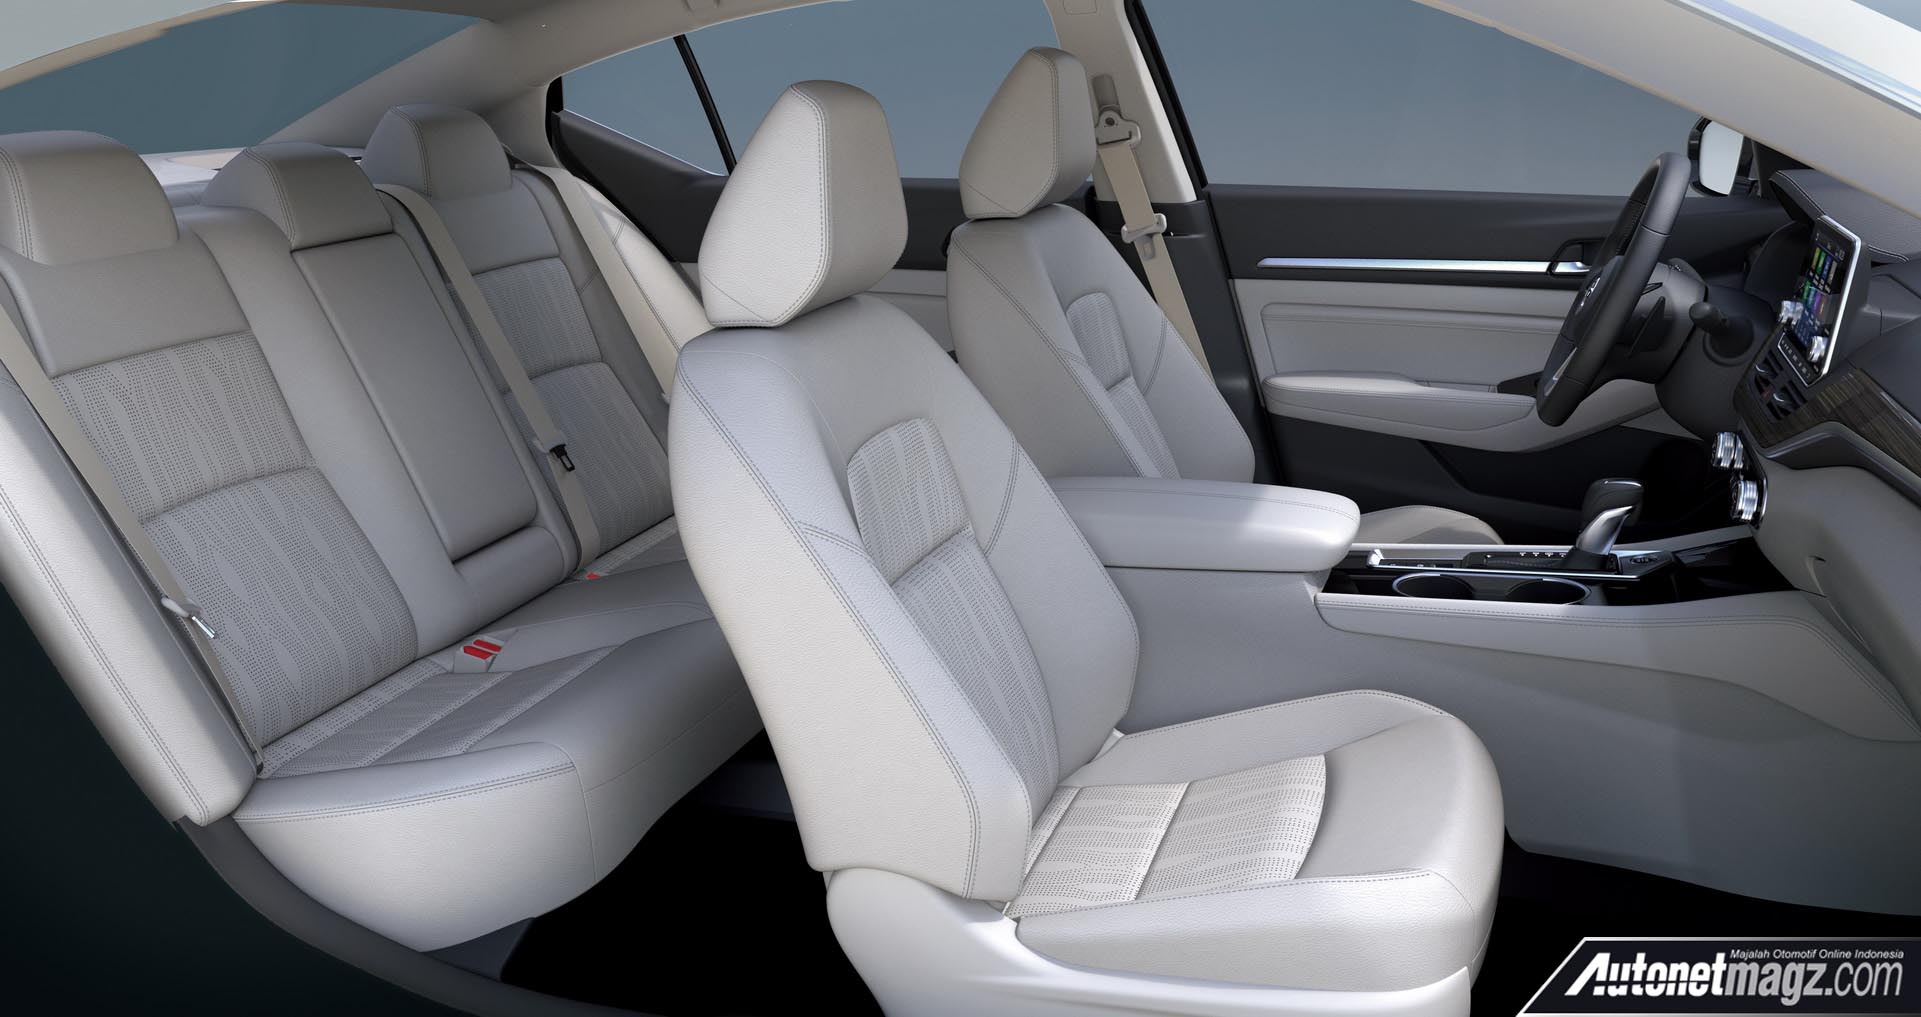 Berita, Nissan Altima 2019 kabin: Nissan Altima 2019 Hadir dengan Mesin Turbo dan AWD